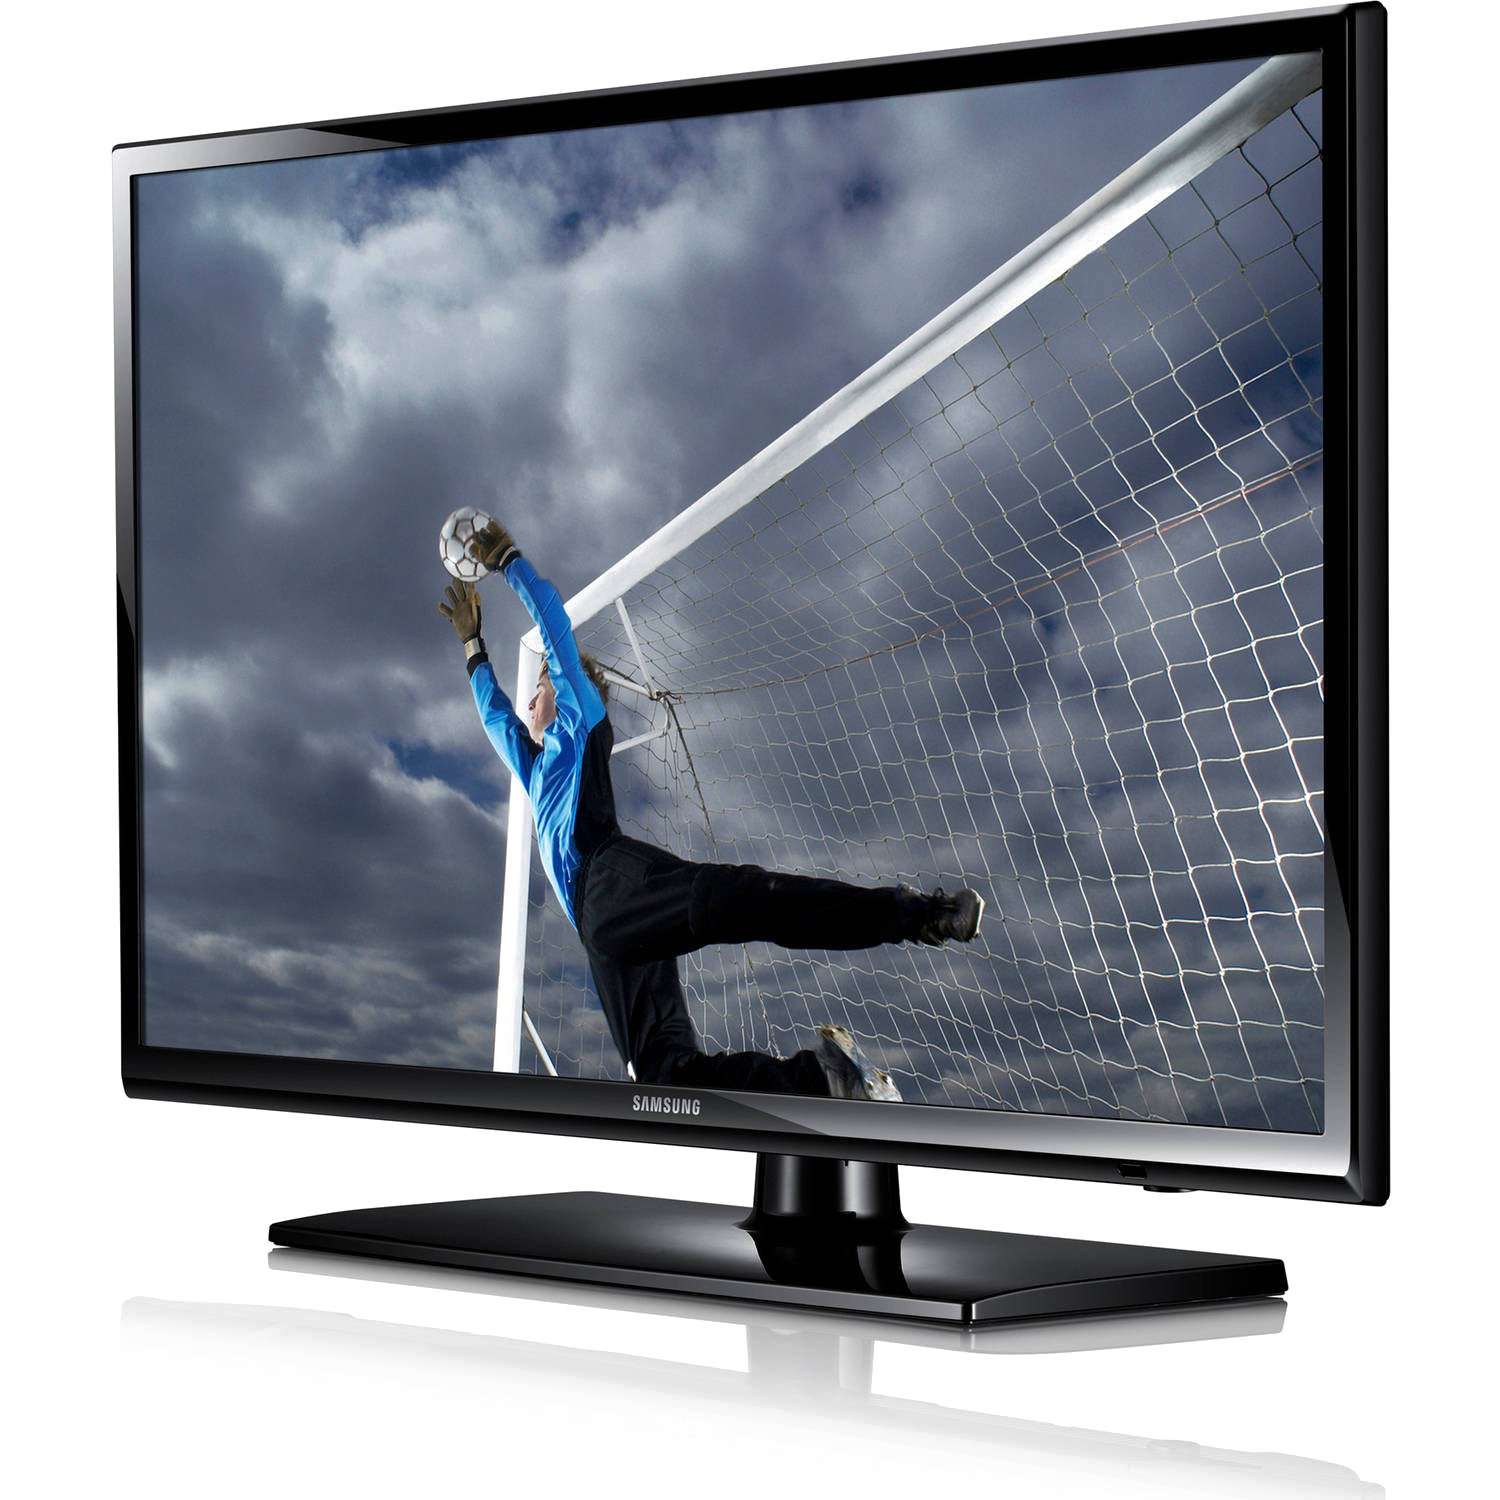 Download PNG image - LED Television PNG Transparent Image 